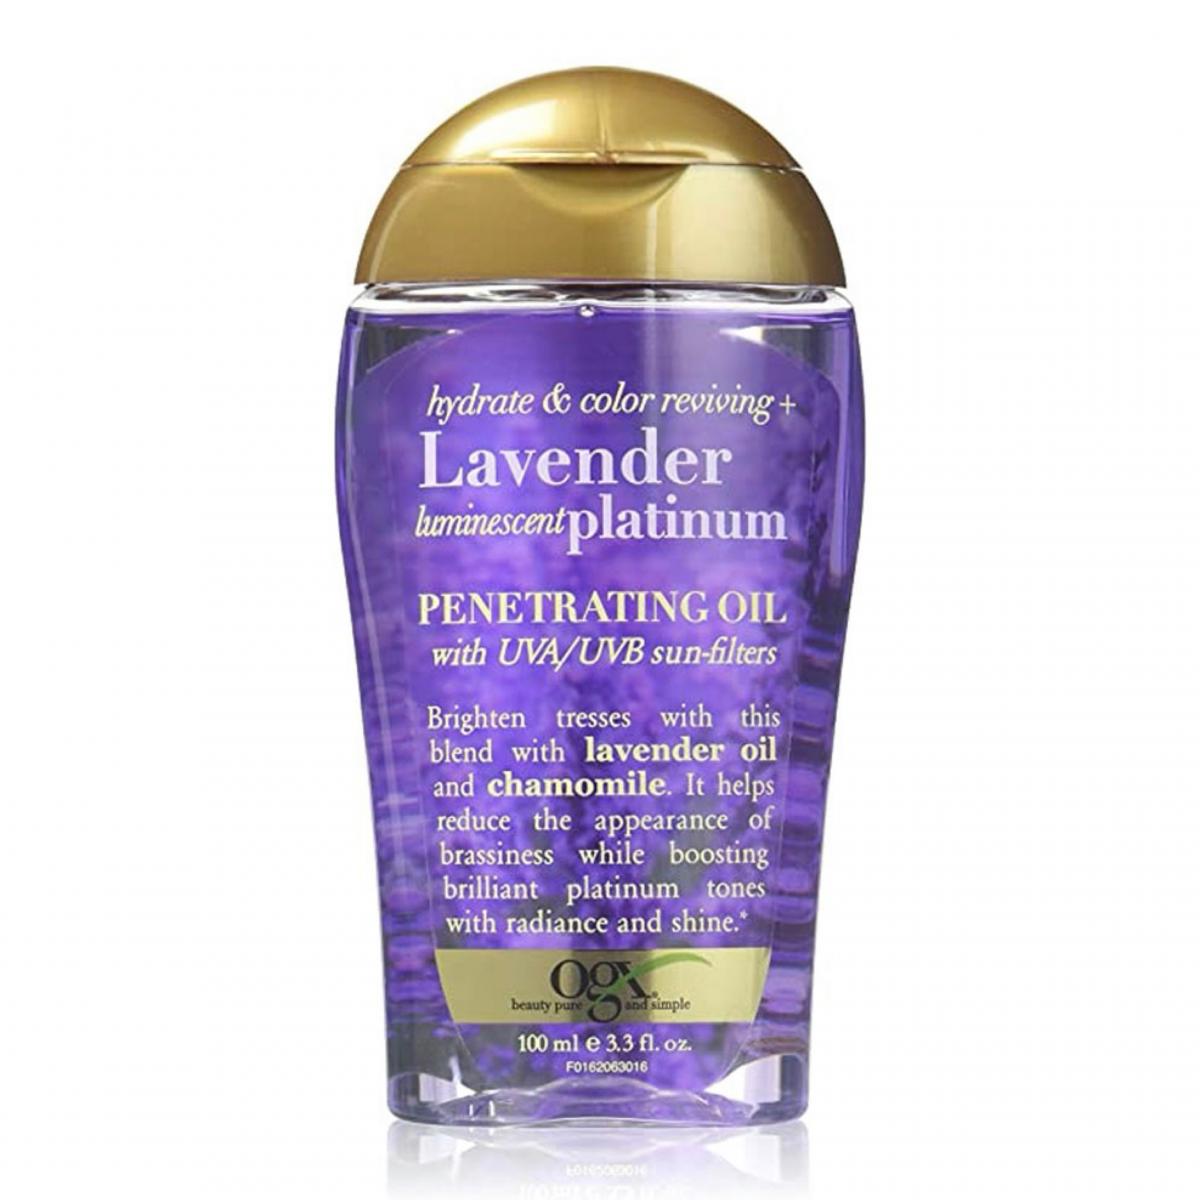 روغن لوندر - Lavender platinum hair oil